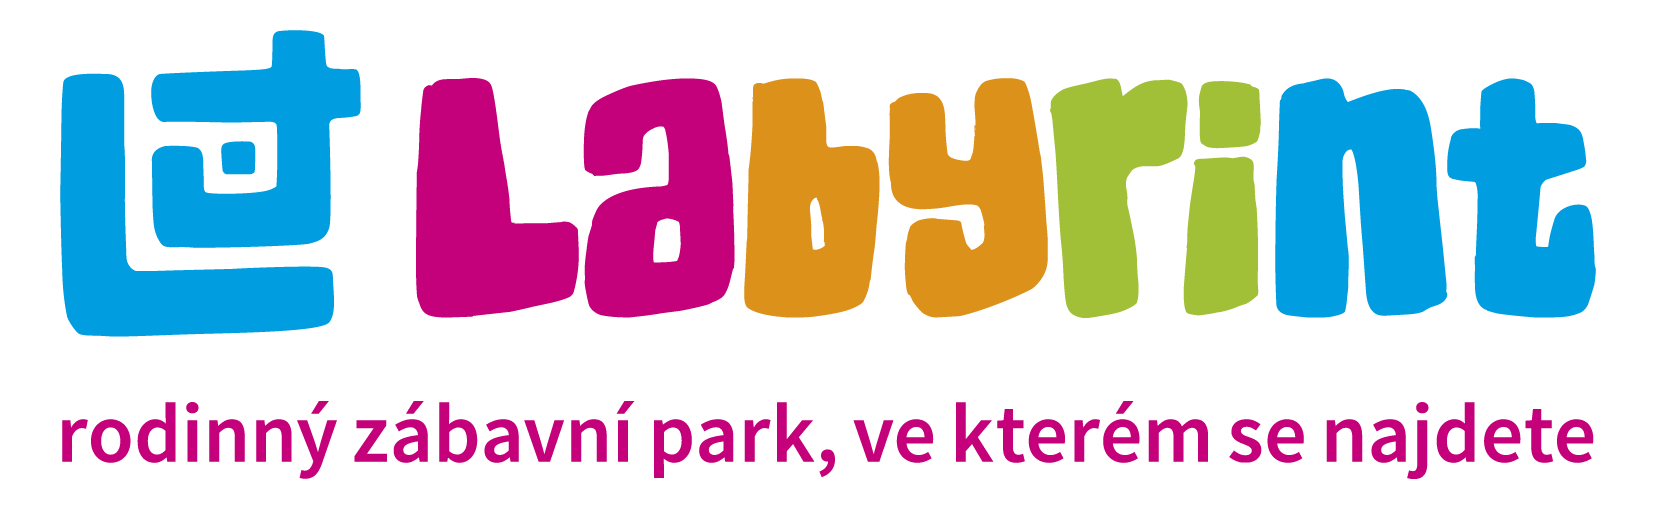 LABYRINT logo01 - Copy